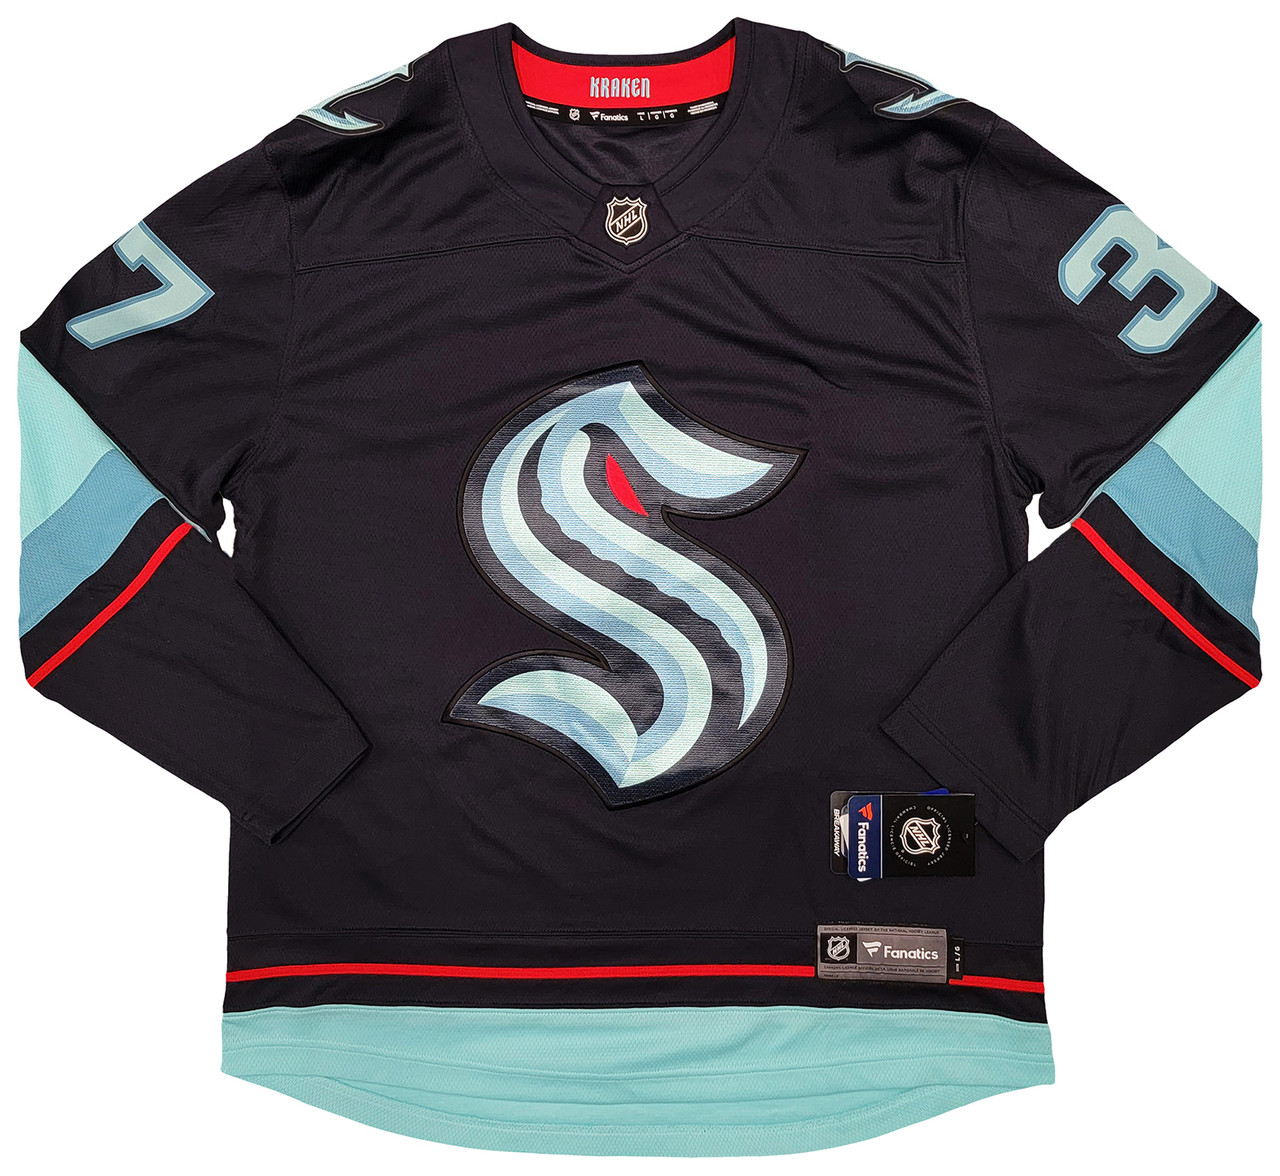 Fanatics NHL authentic jersey Seattle Kraken